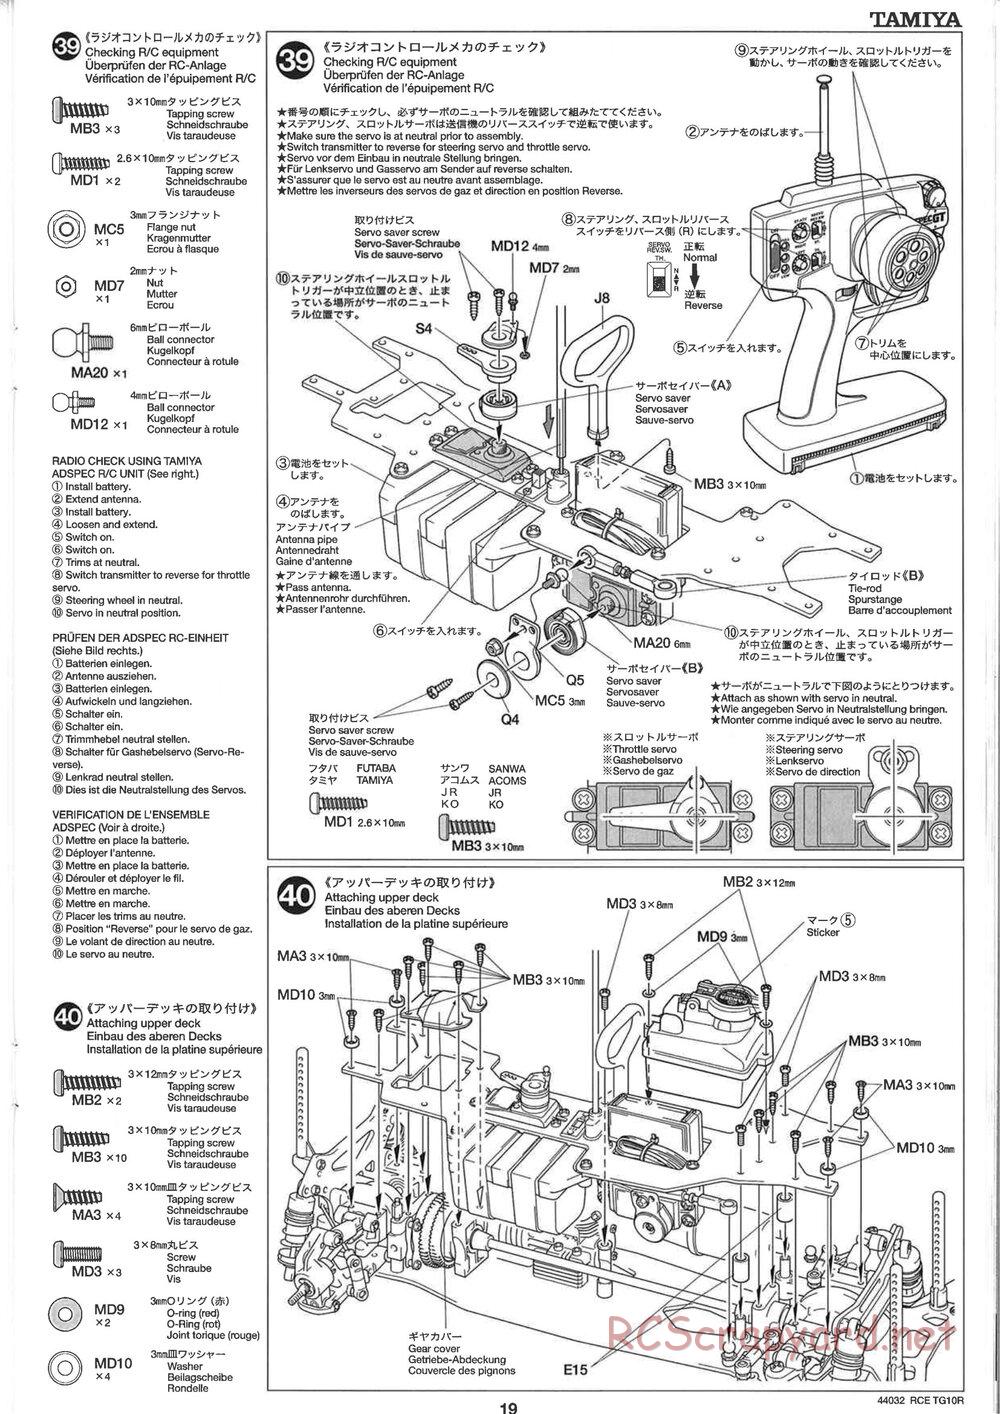 Tamiya - TG10R Chassis - Manual - Page 19